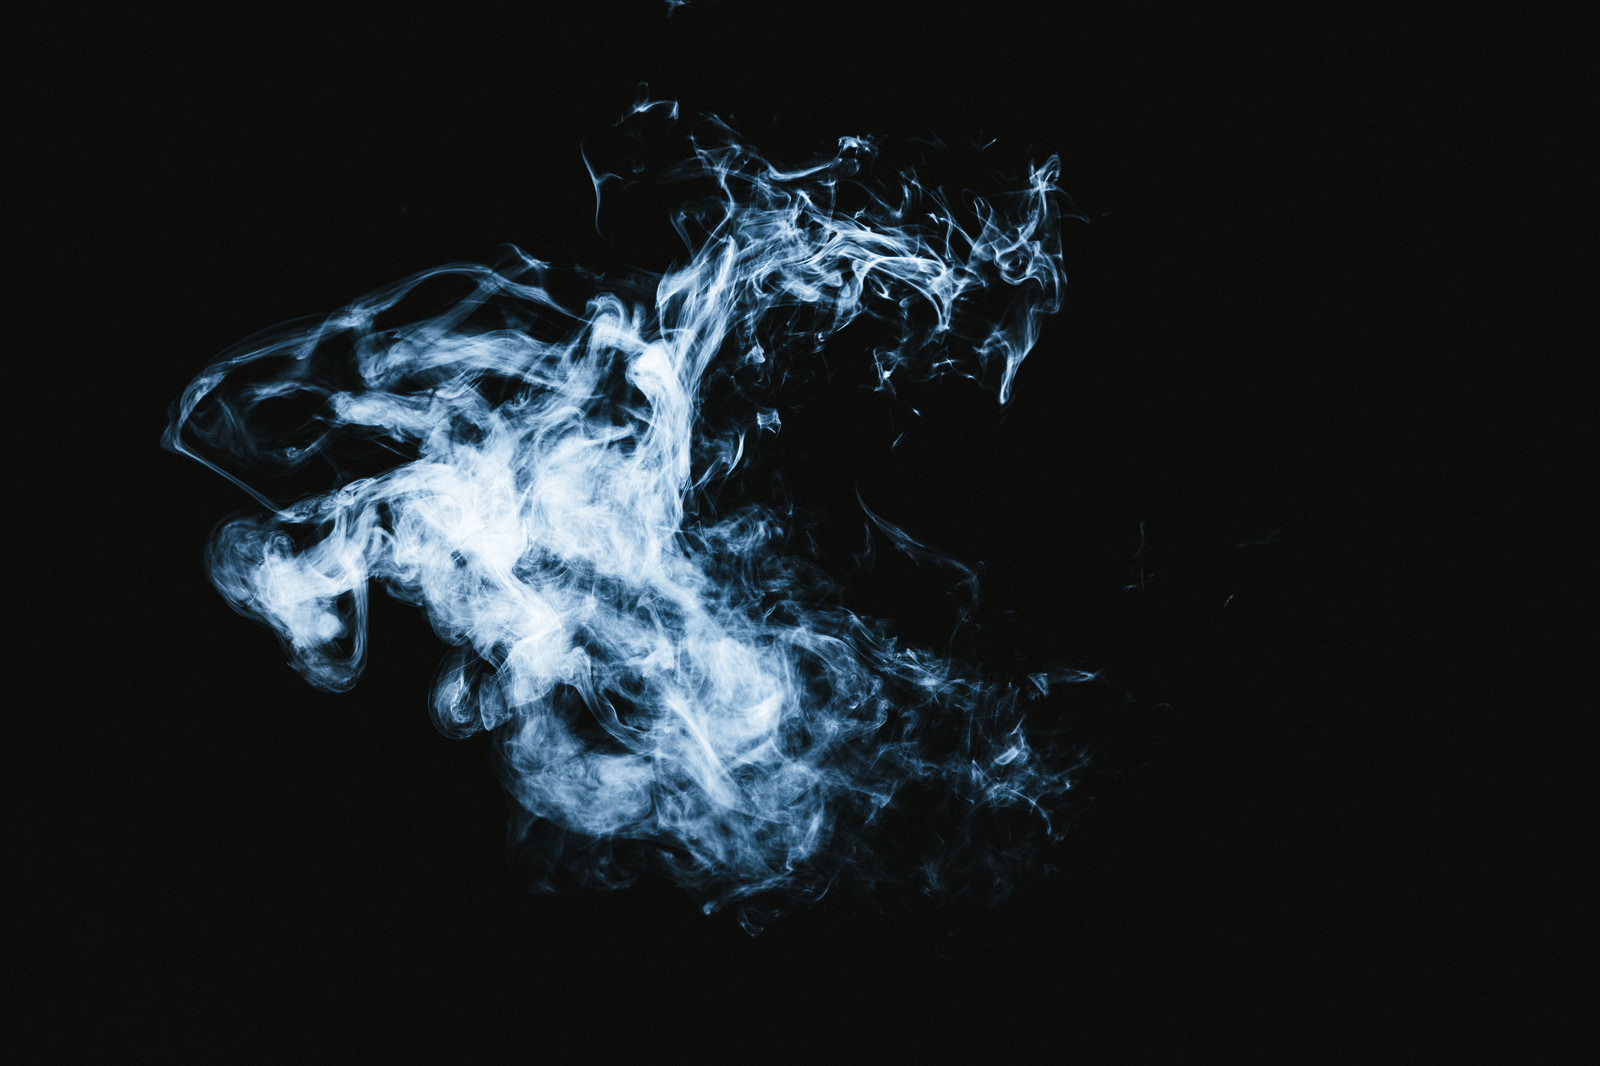 「マッドピエロのような煙 | フリー素材のぱくたそ」の写真